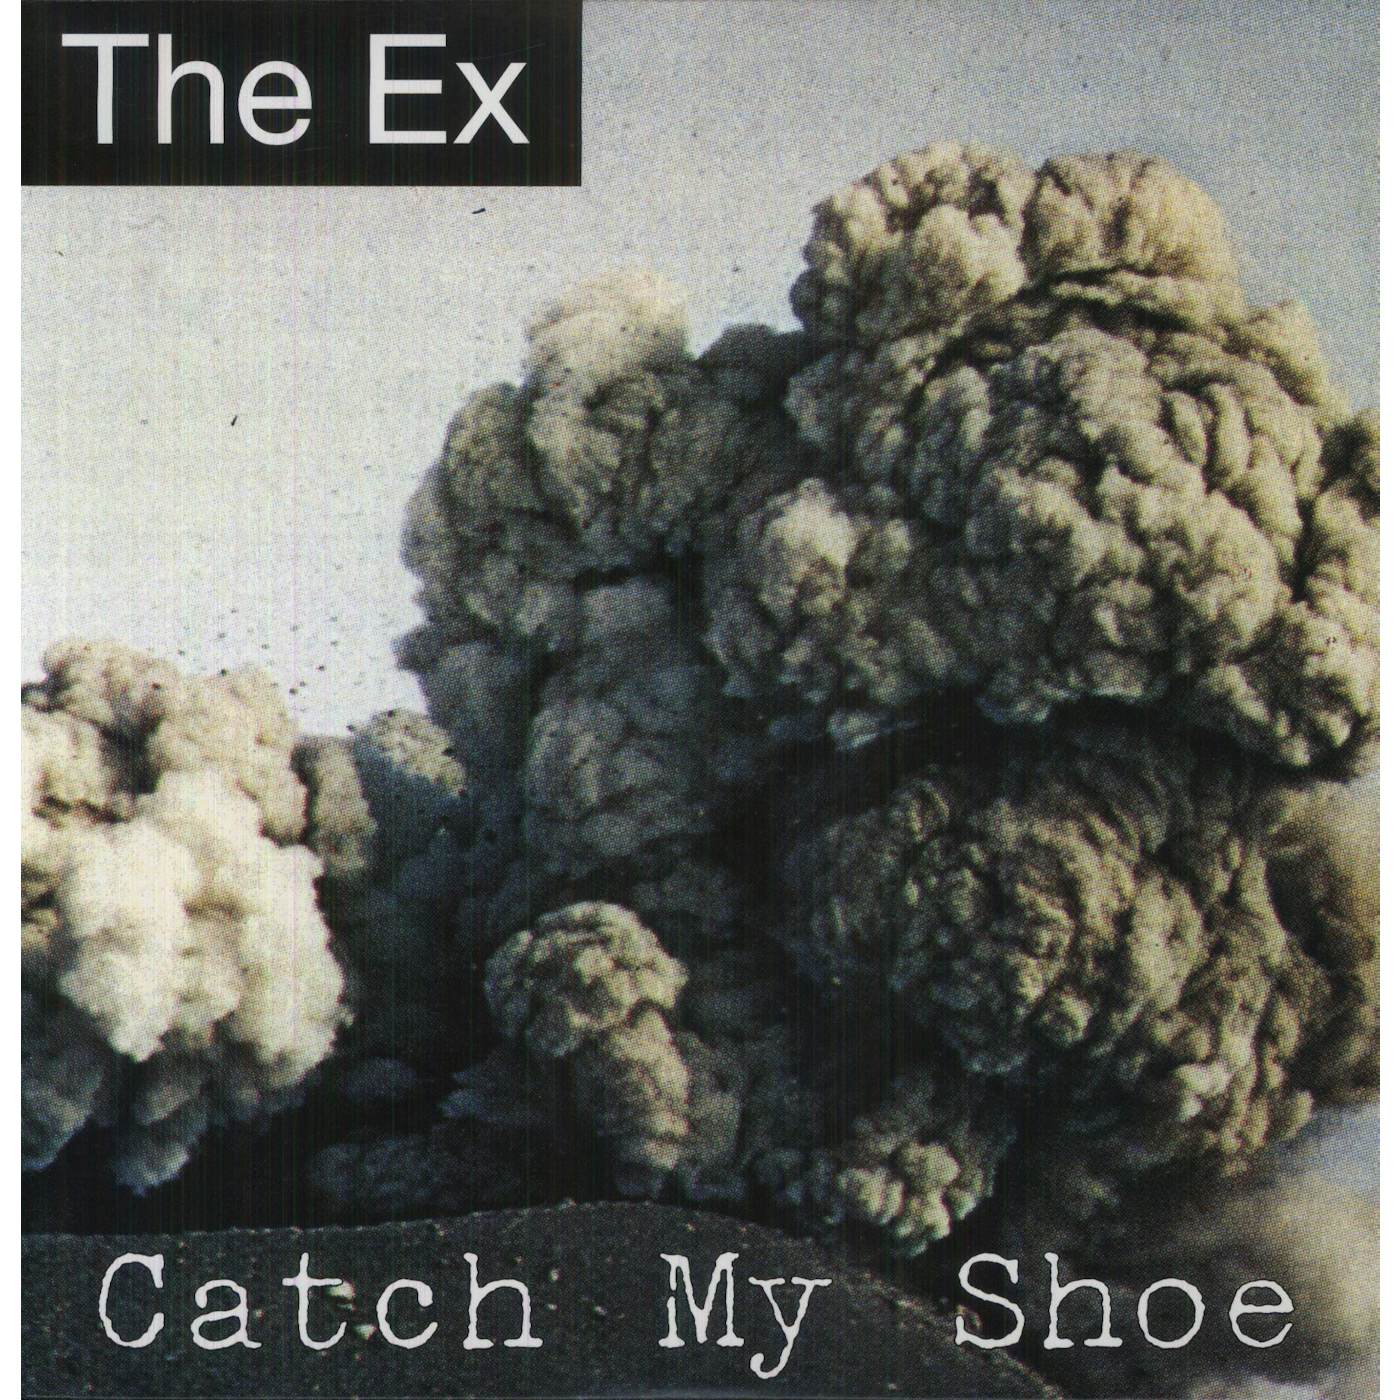 Ex Catch My Shoe Vinyl Record